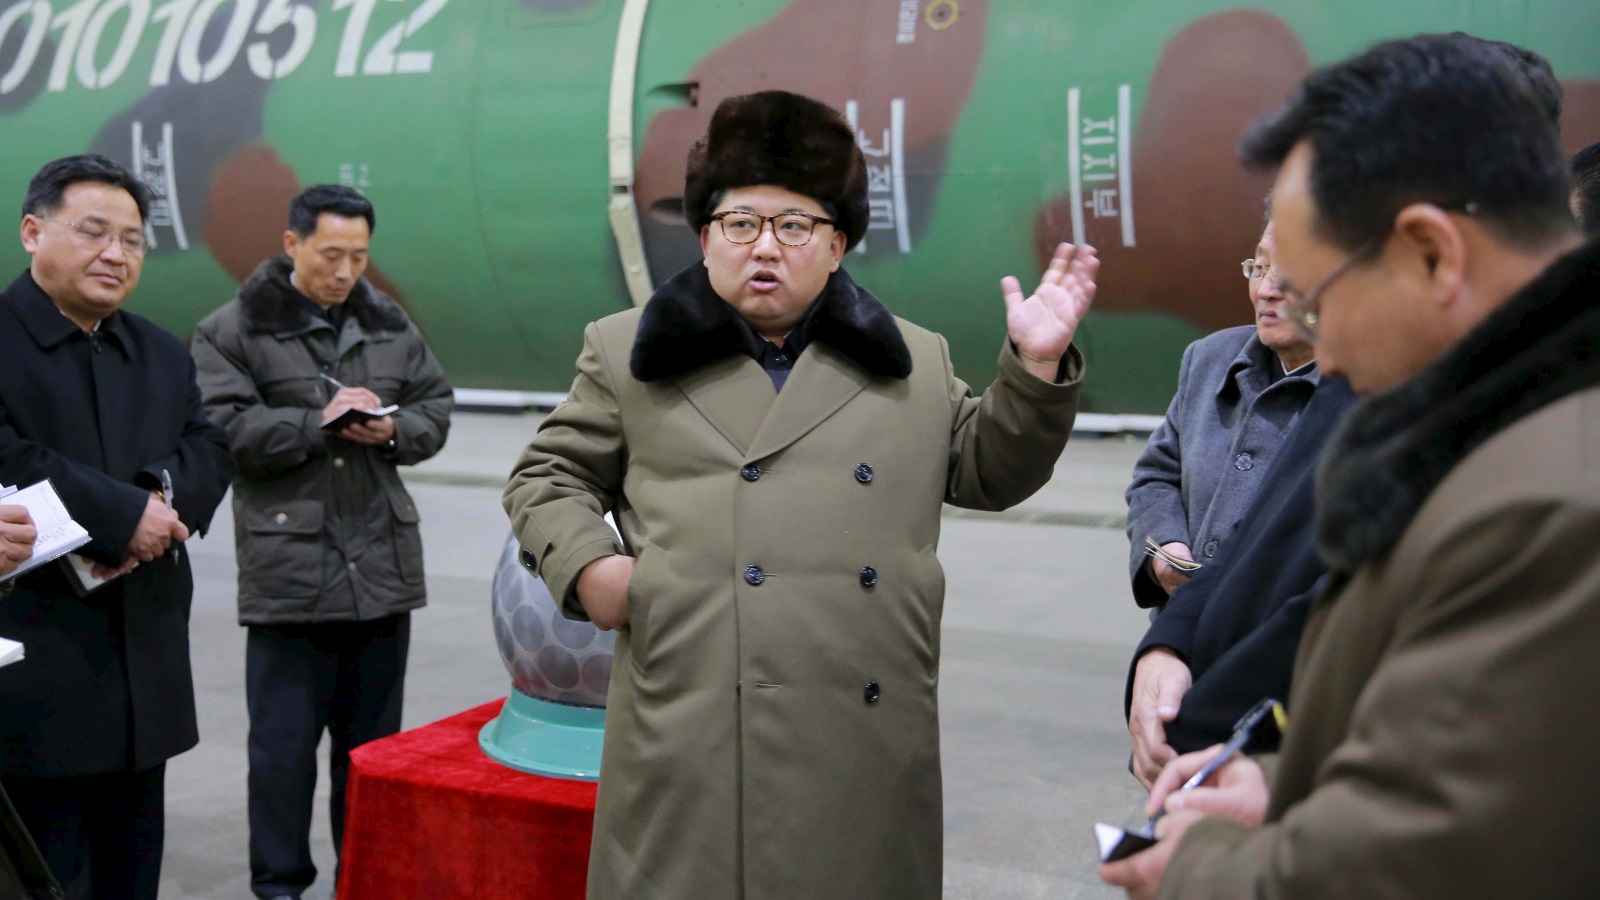 وجود نظام مسلّح بالترسانة النووية في كوريا الشمالية يمكنه أن يشكل ورقة مساومة في صوغ قواعد اللعبة في آسيا برمتها